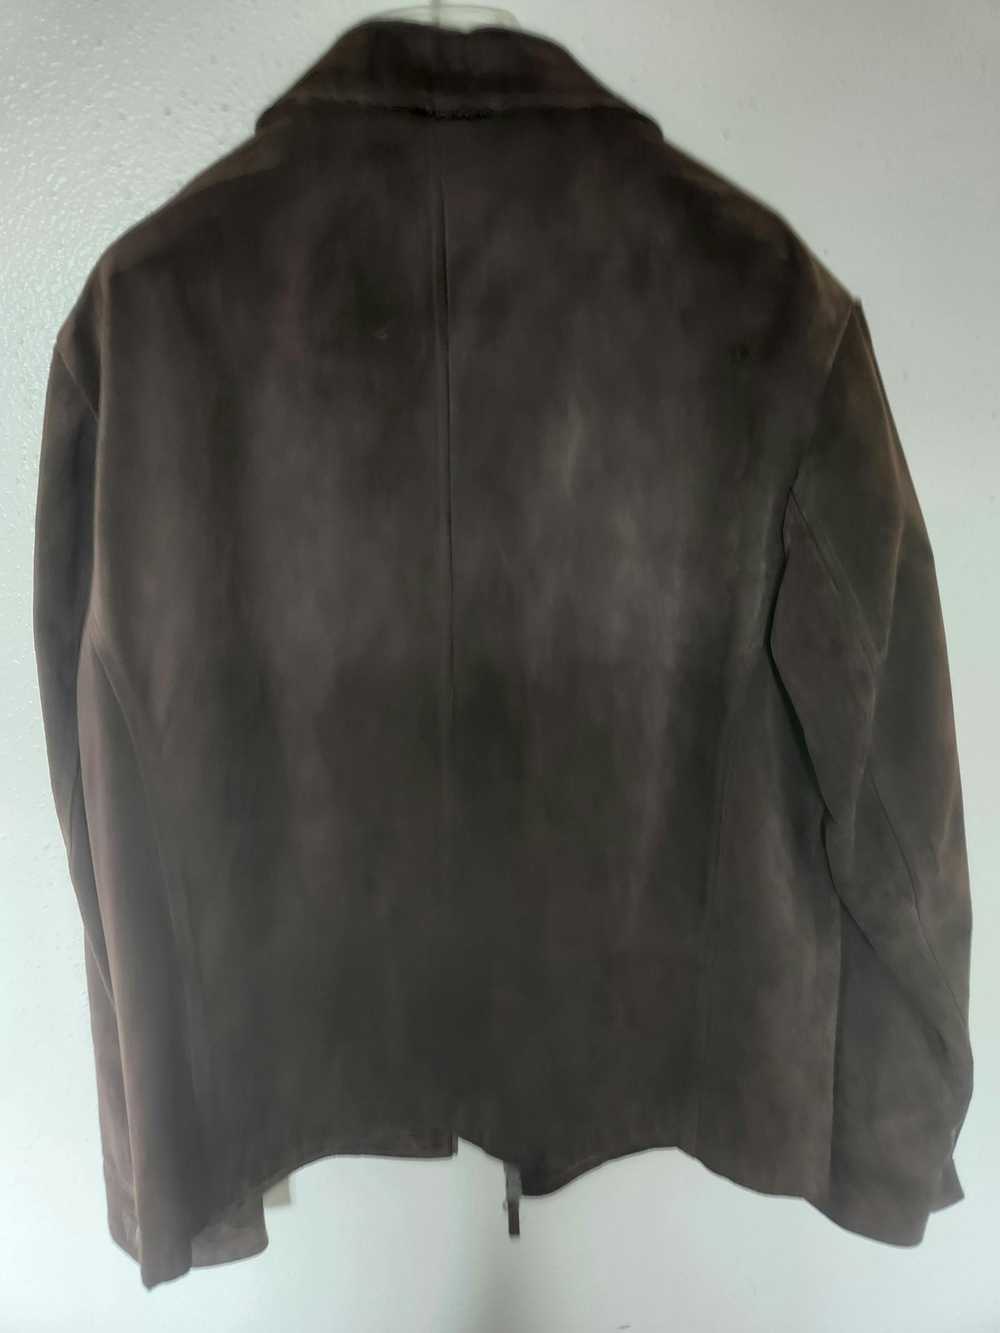 Banana Republic Chocolate suede leather jacket - image 4